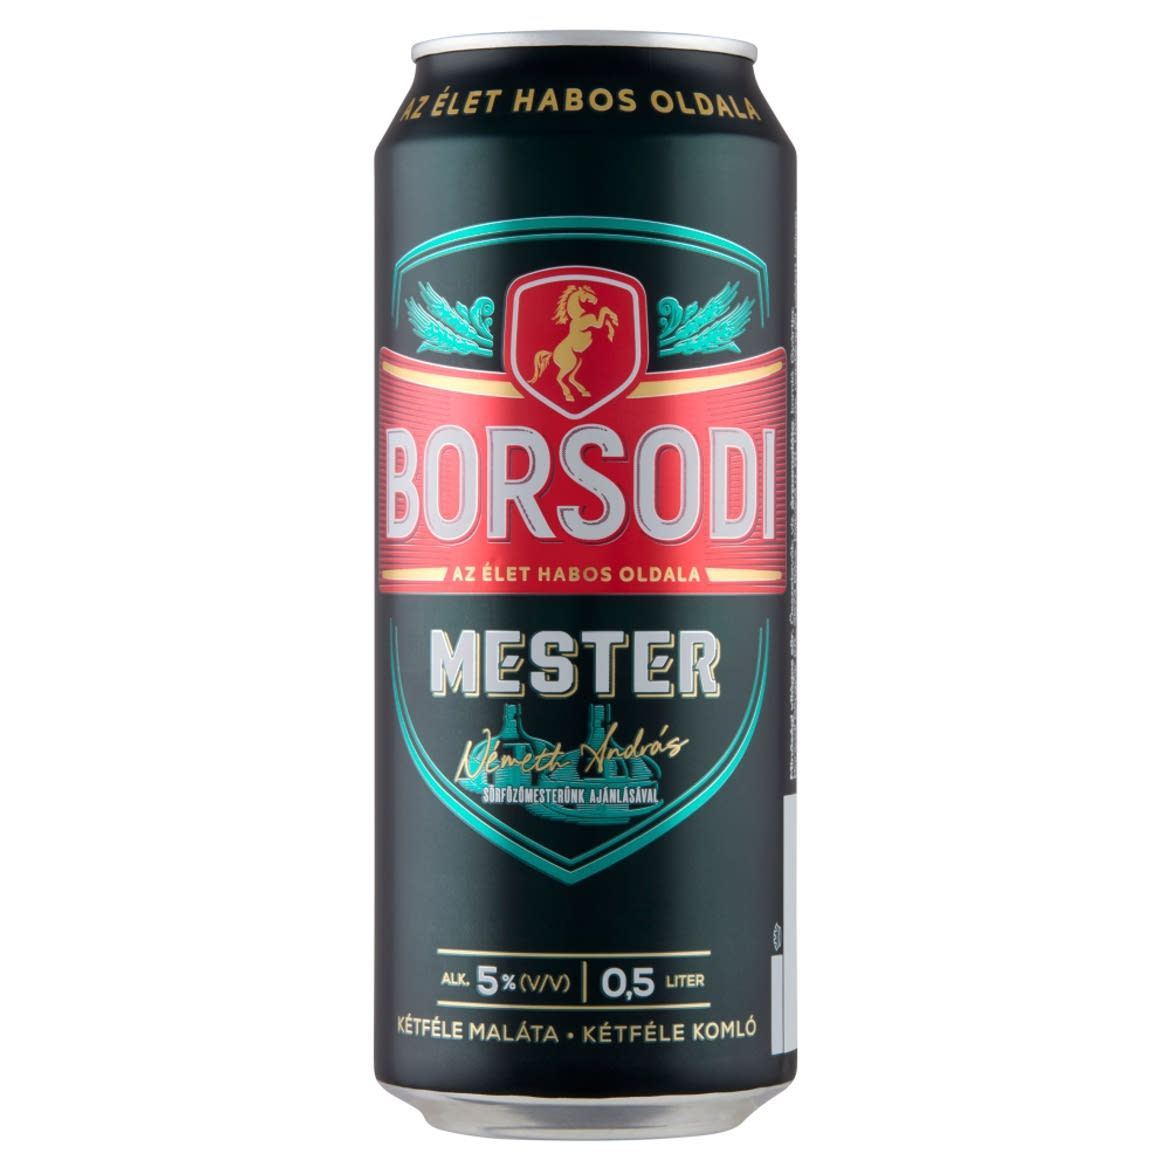 Borsodi Mester minőségi világos sör 5%